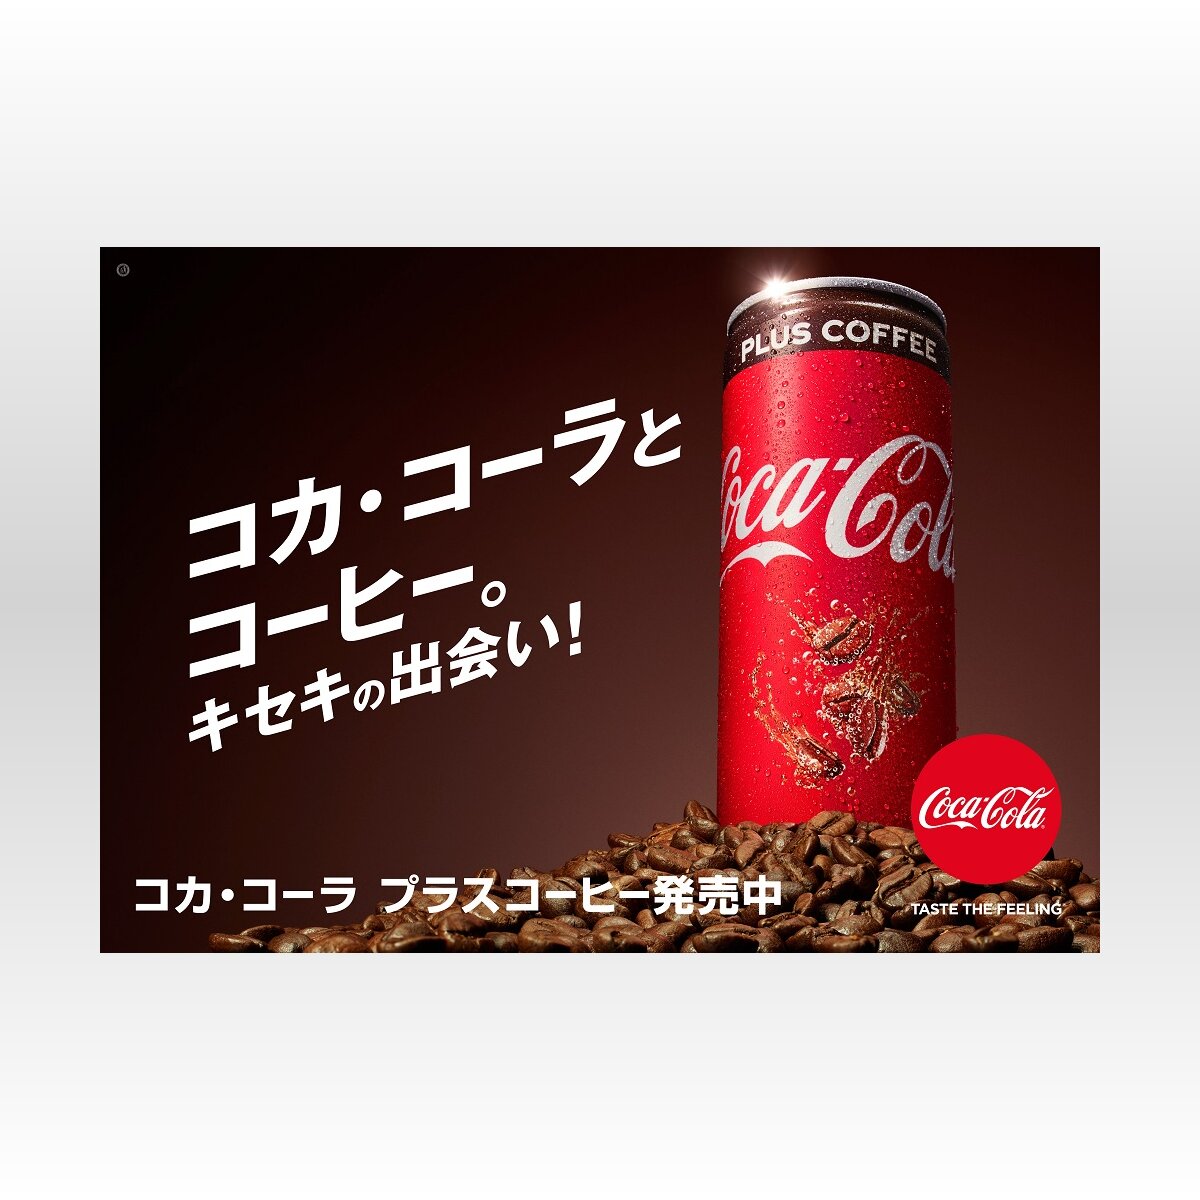 コーヒーとコカ コーラが融合 刺激ダブルの コカ コーラ プラスコーヒー 登場 18年9月5日 Biglobeニュース